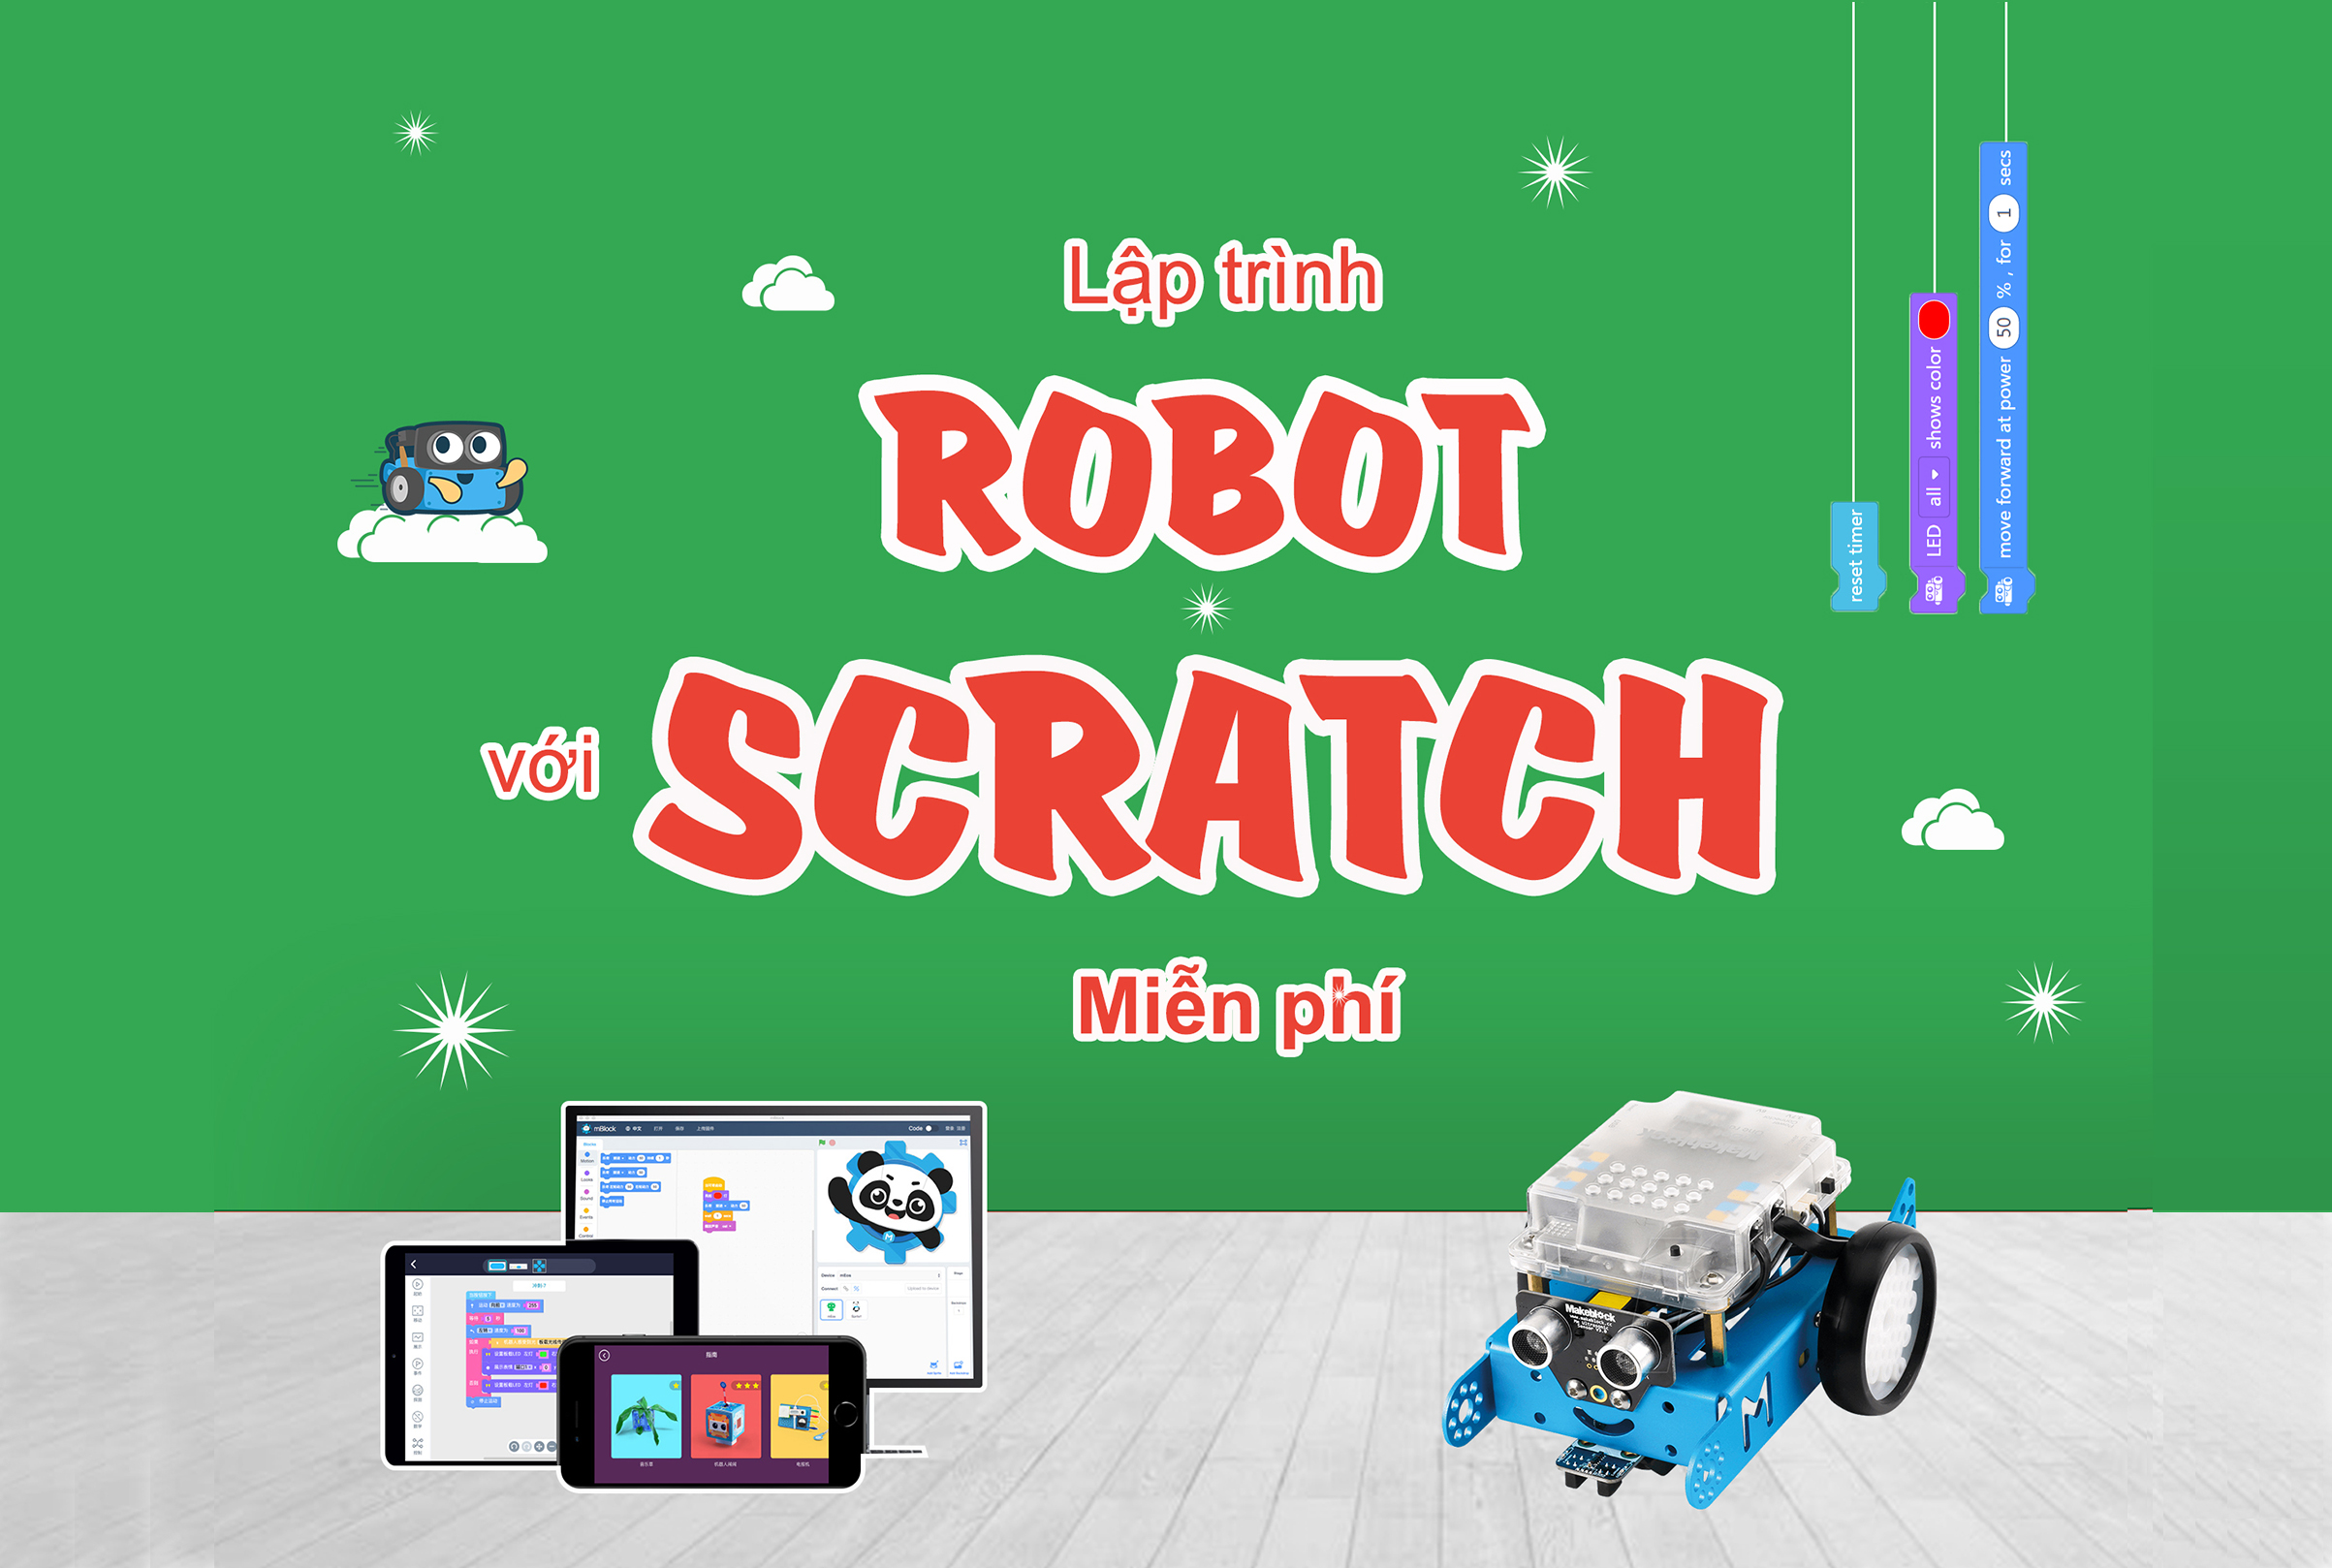 Lập trình ĐK Robot với Scratch 2.0 Free